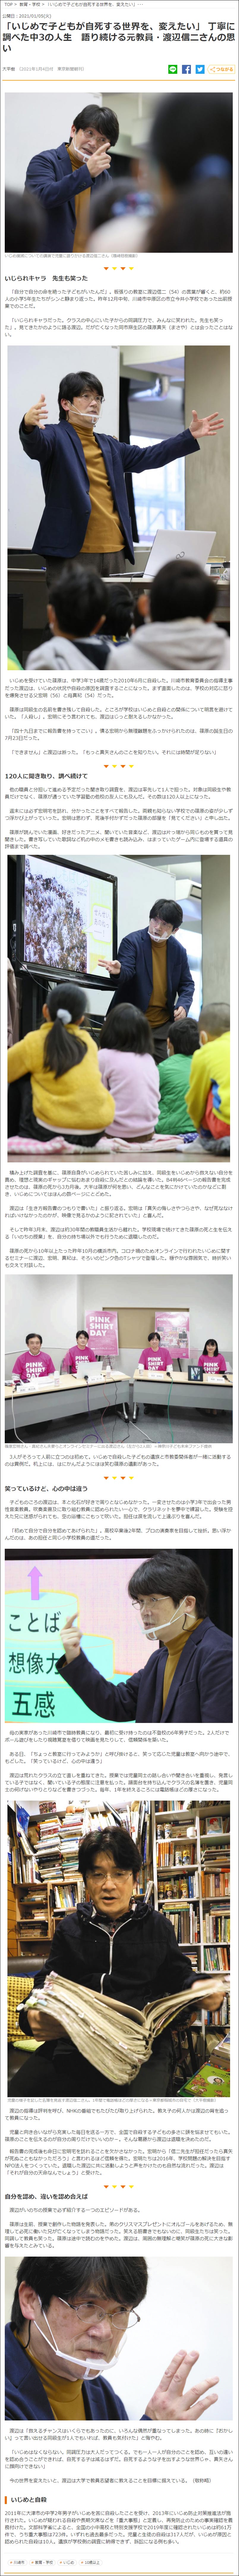 渡邉信二：東京新聞掲載、2021年1月4日「『いじめで子どもが自死する世界を、変えたい』丁寧に調べた中3の人生 語り続ける元教員・渡辺信二さんの思い」